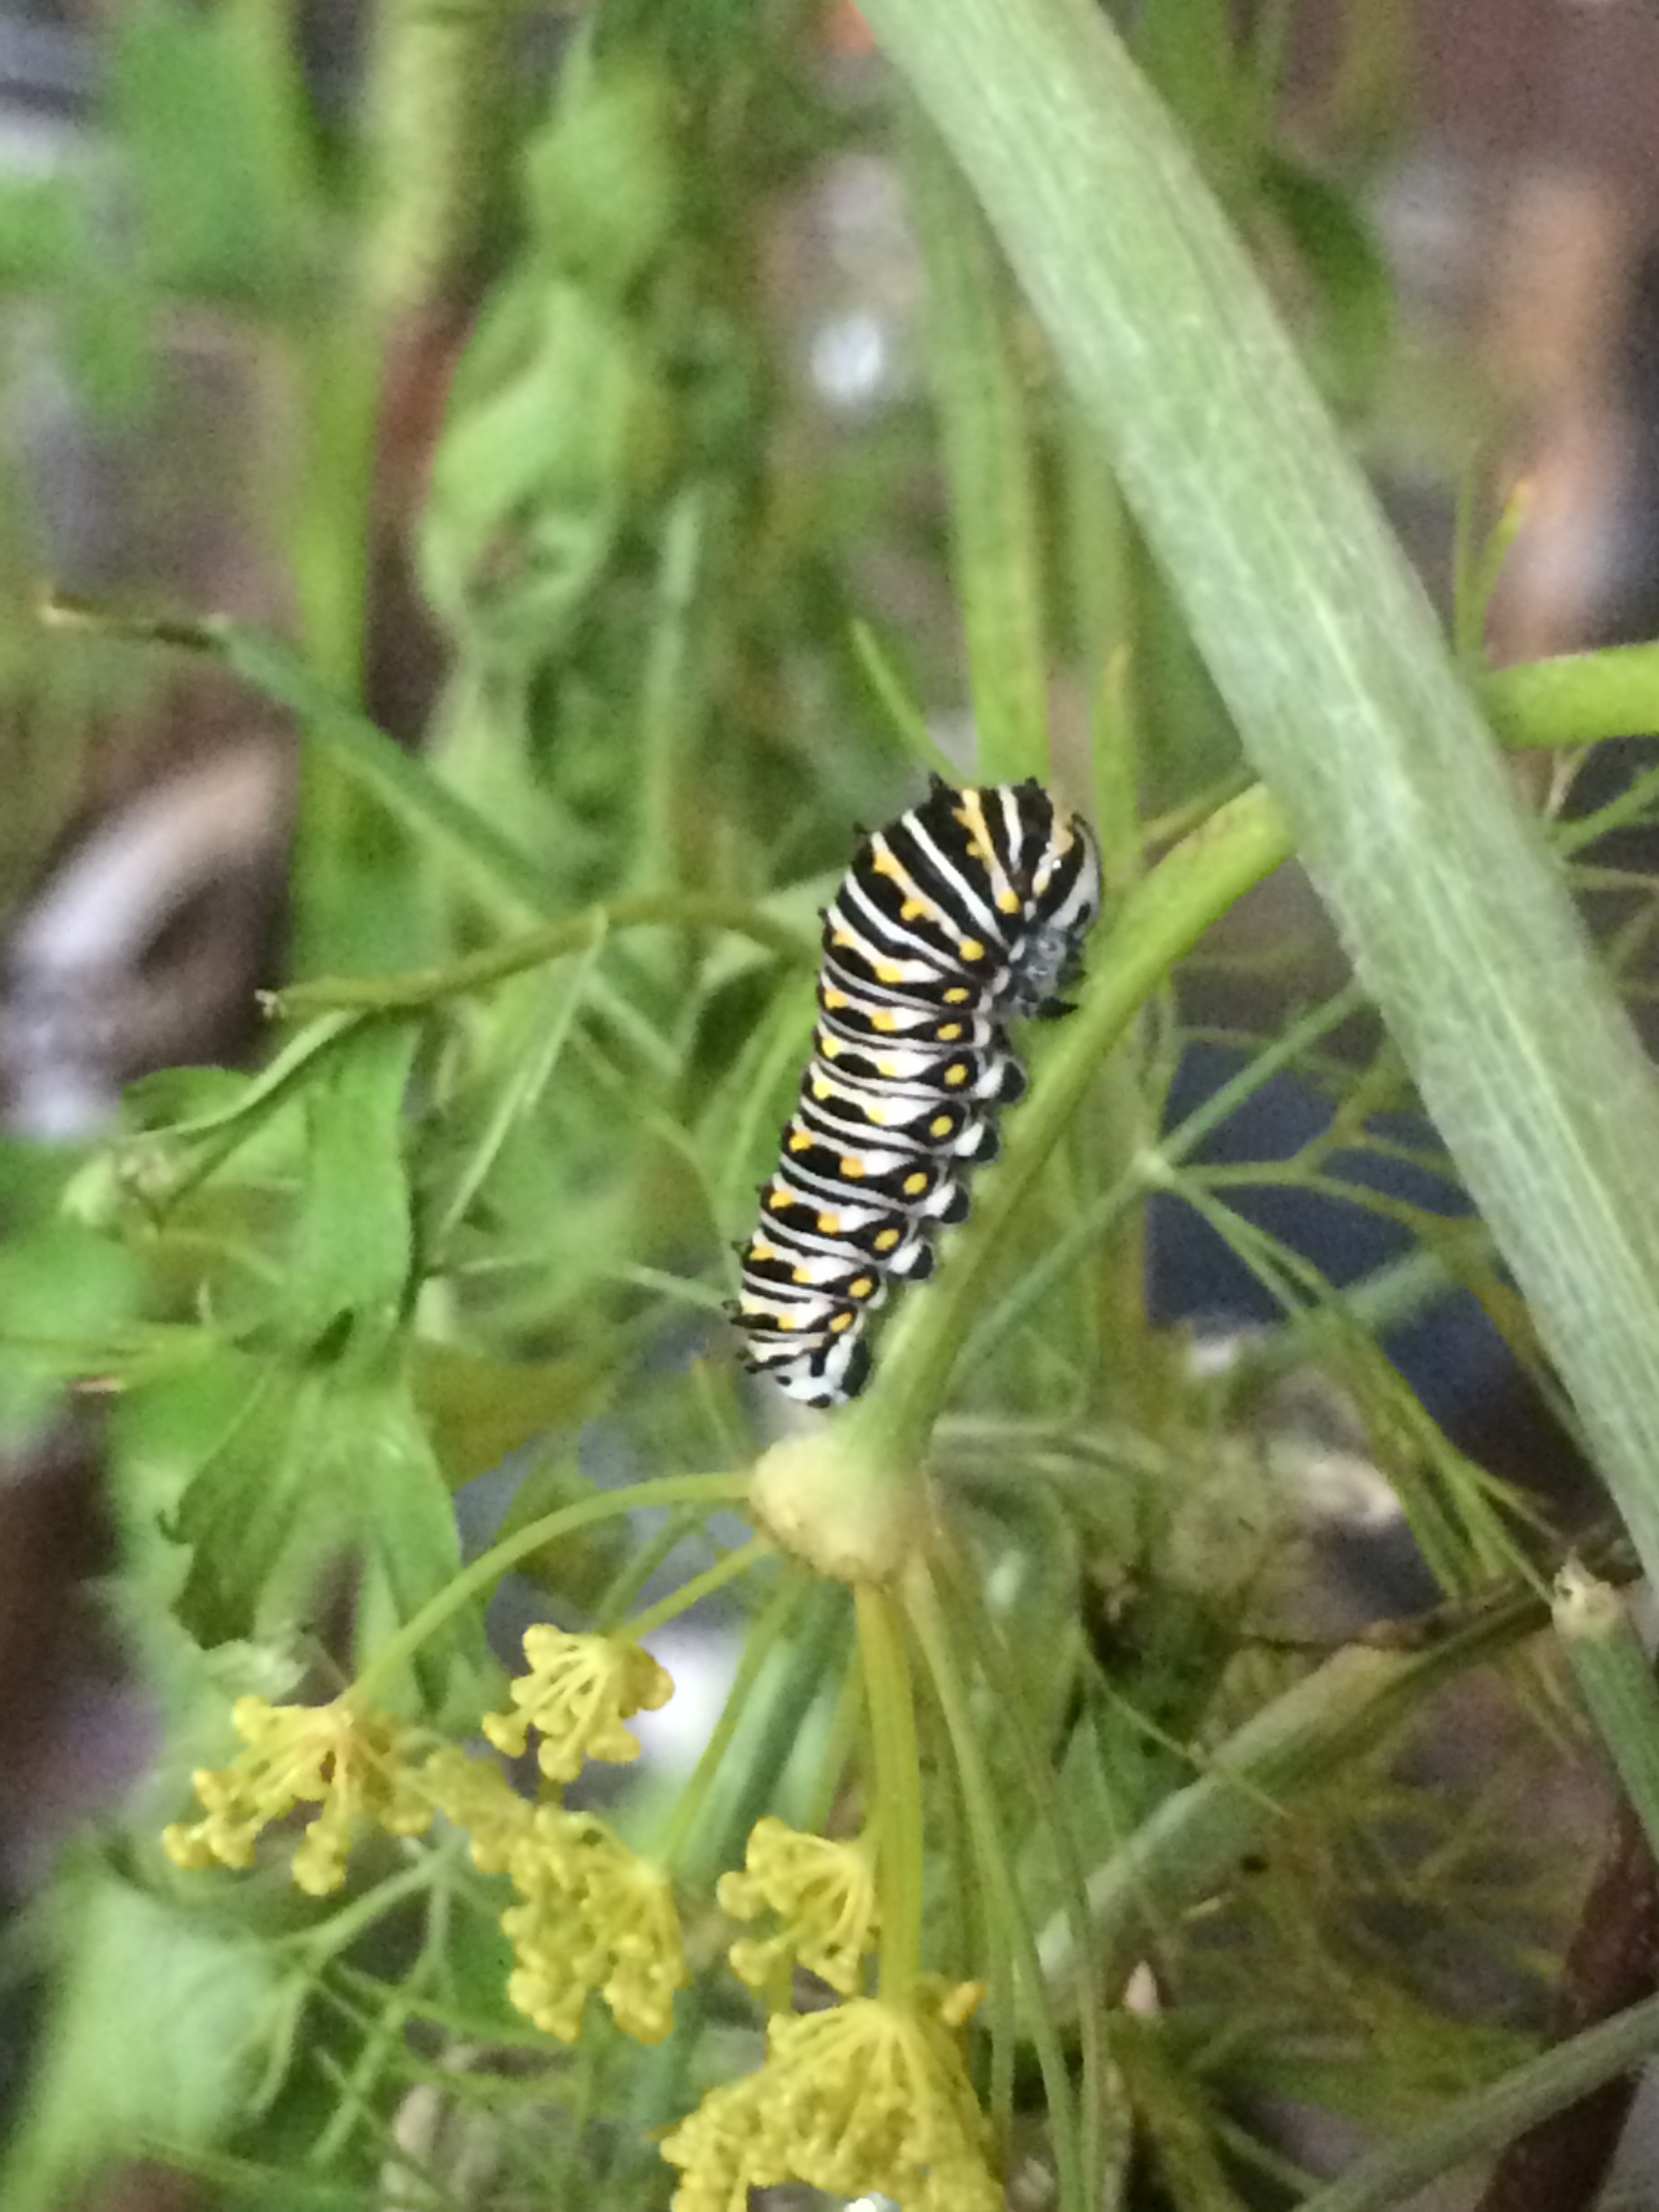 Caterpillar at third instar or so